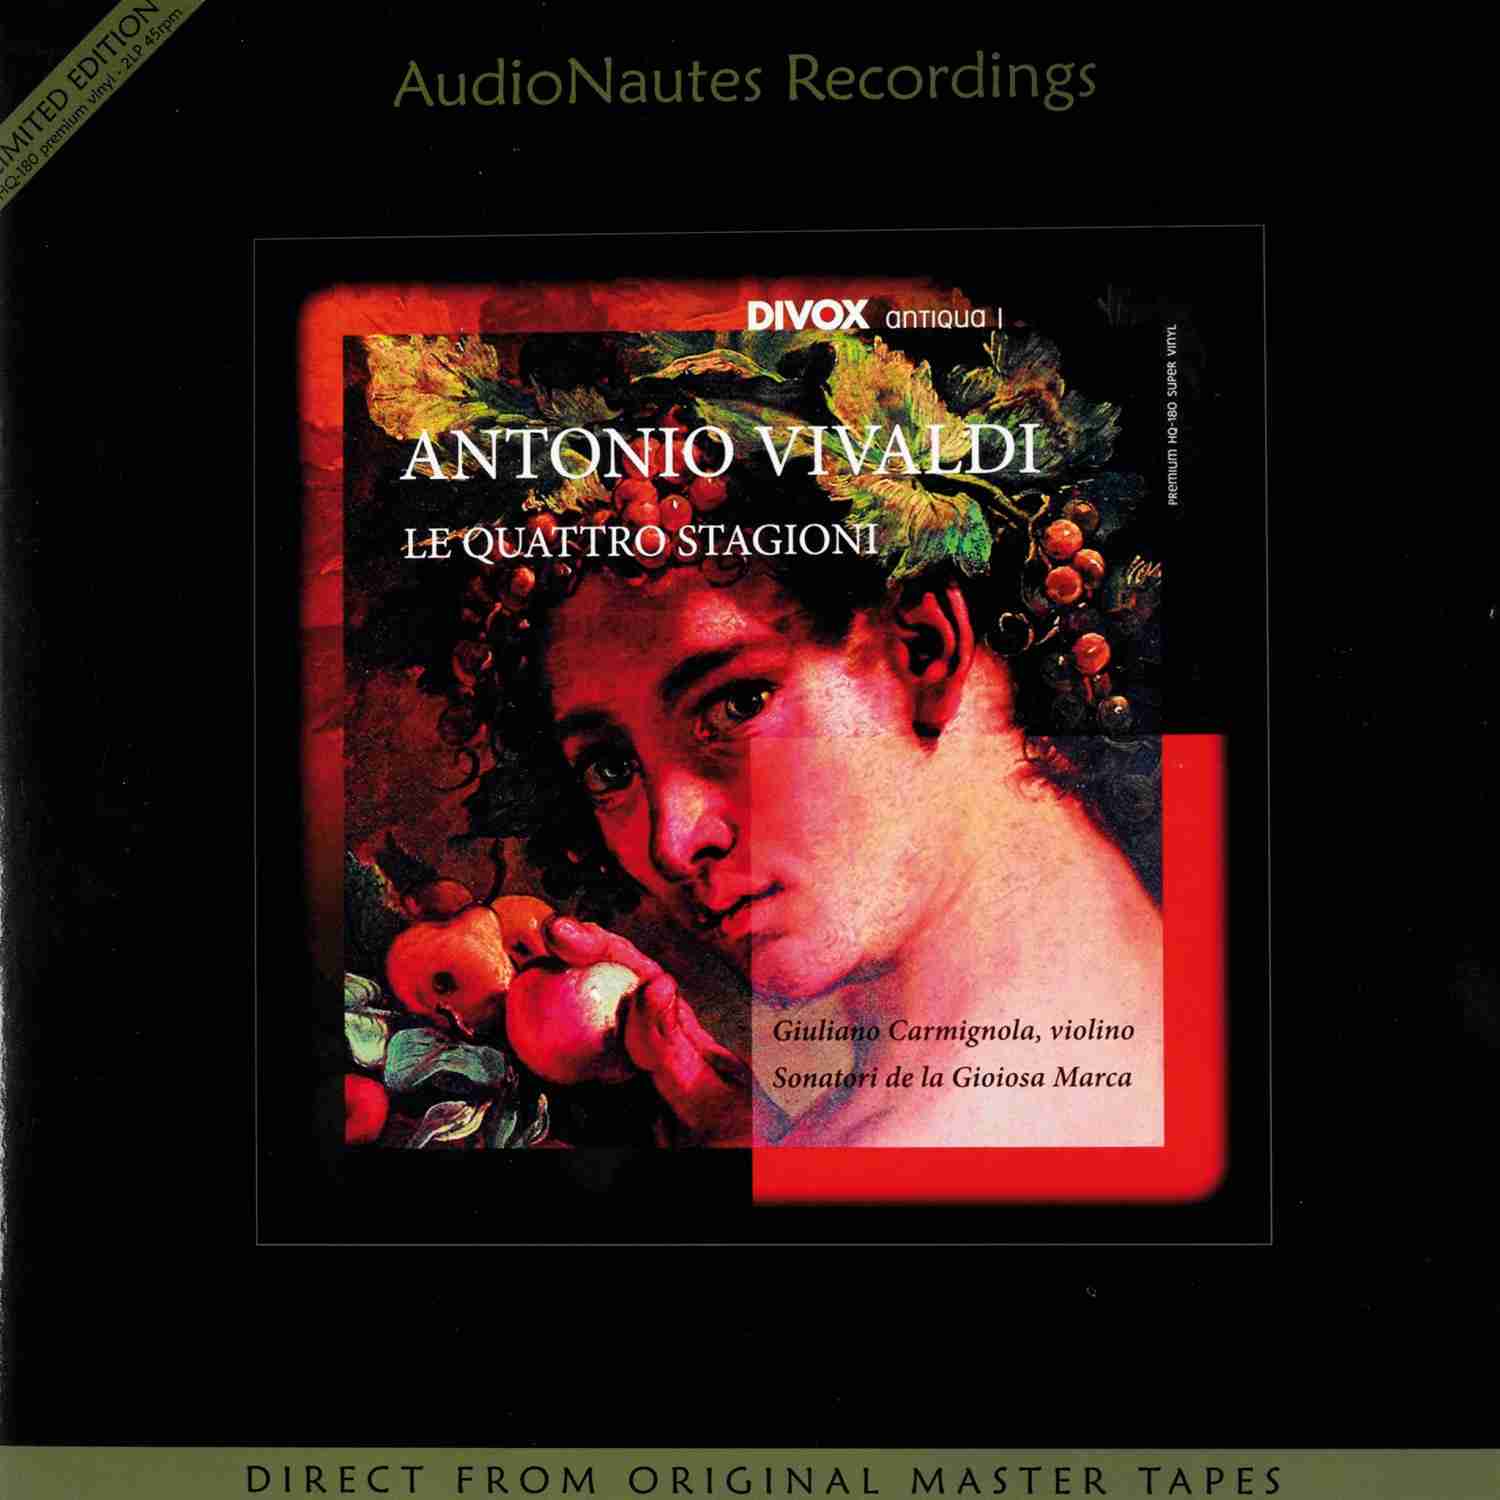 Schallplatte Komponist: Antonio Vivaldi / Interpreten: Sonatori de la Gioiosa Marca, Giuliano Carmignola - Le Quattro Stagioni (Audio Nautes) im Test, Bild 1